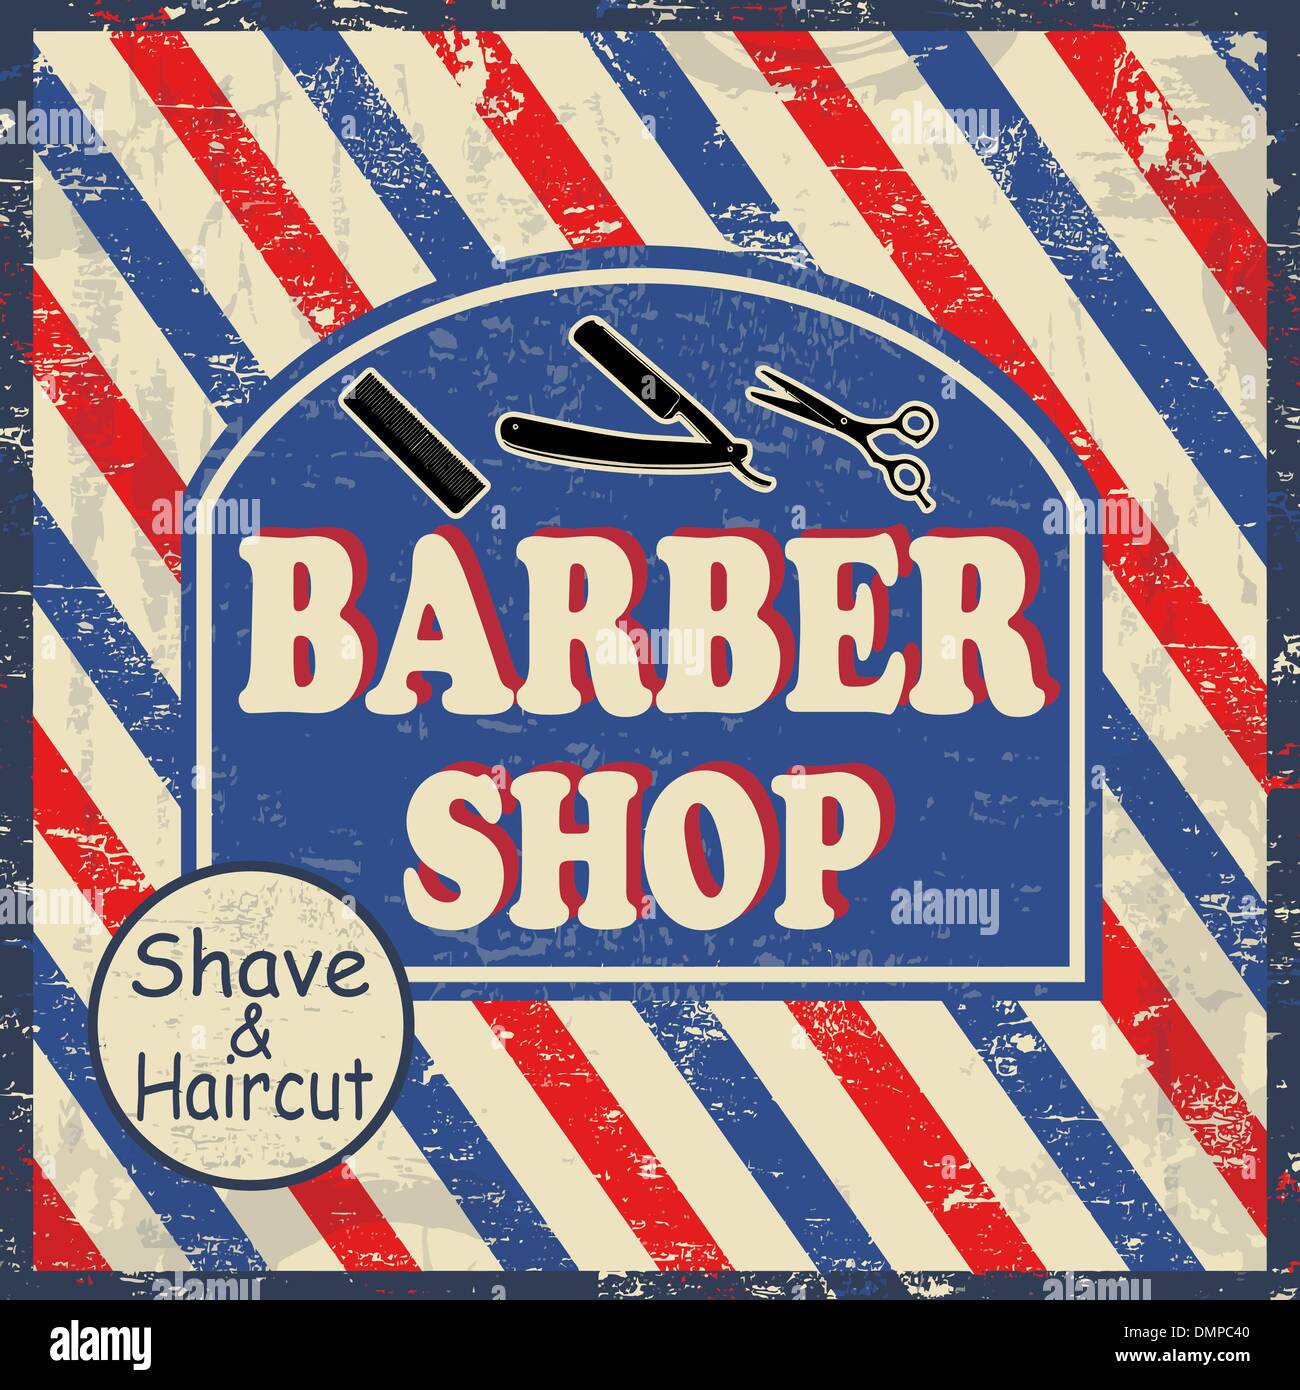 Barber shop vintage poster Stock Vector